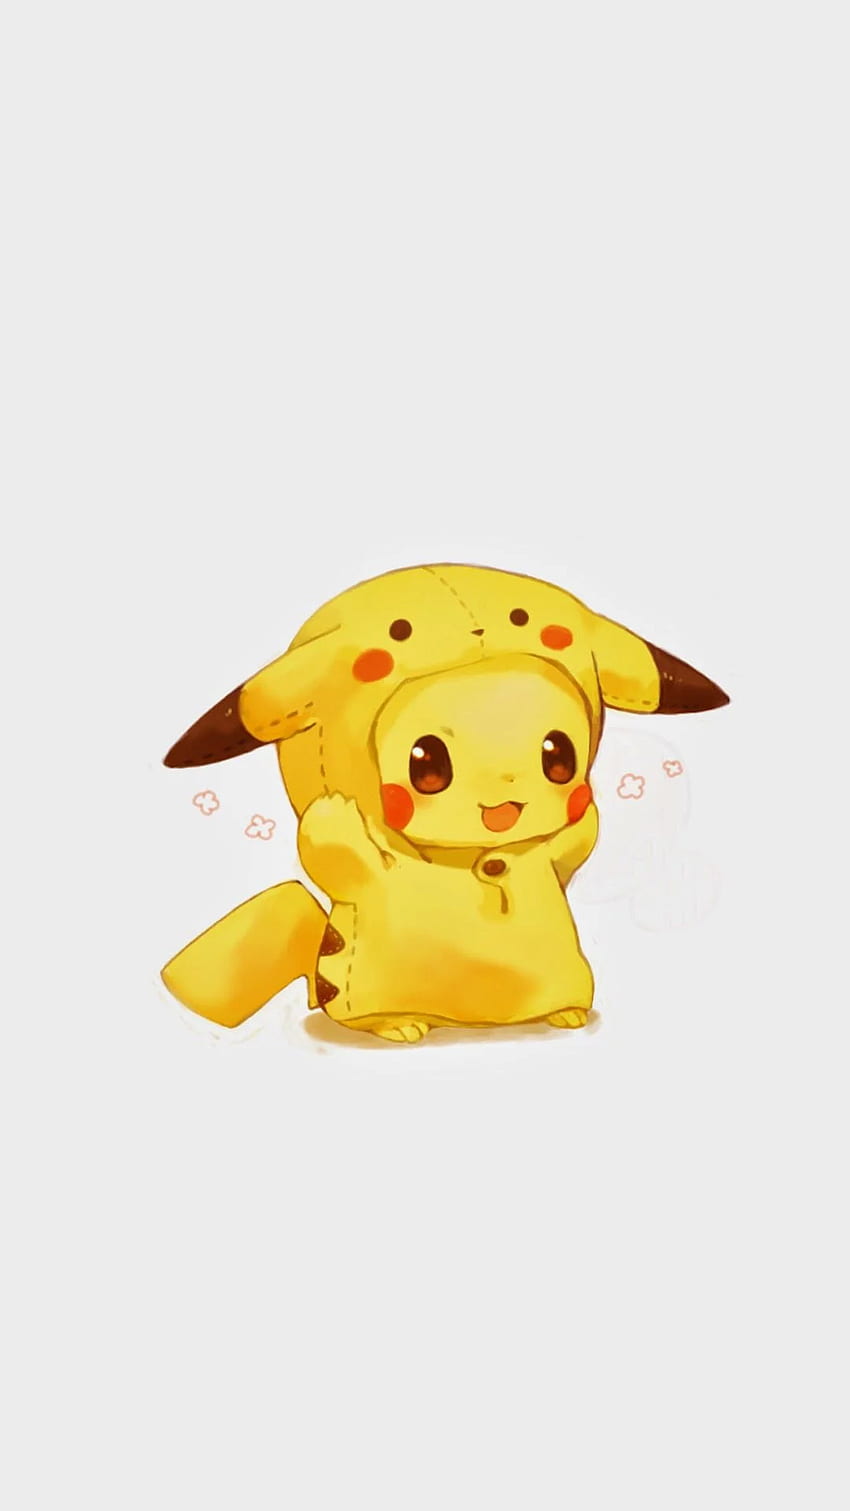 Toque para obtener más divertido lindo Pikachu Pikachu móvil para iPhone S C fondo de pantalla del teléfono